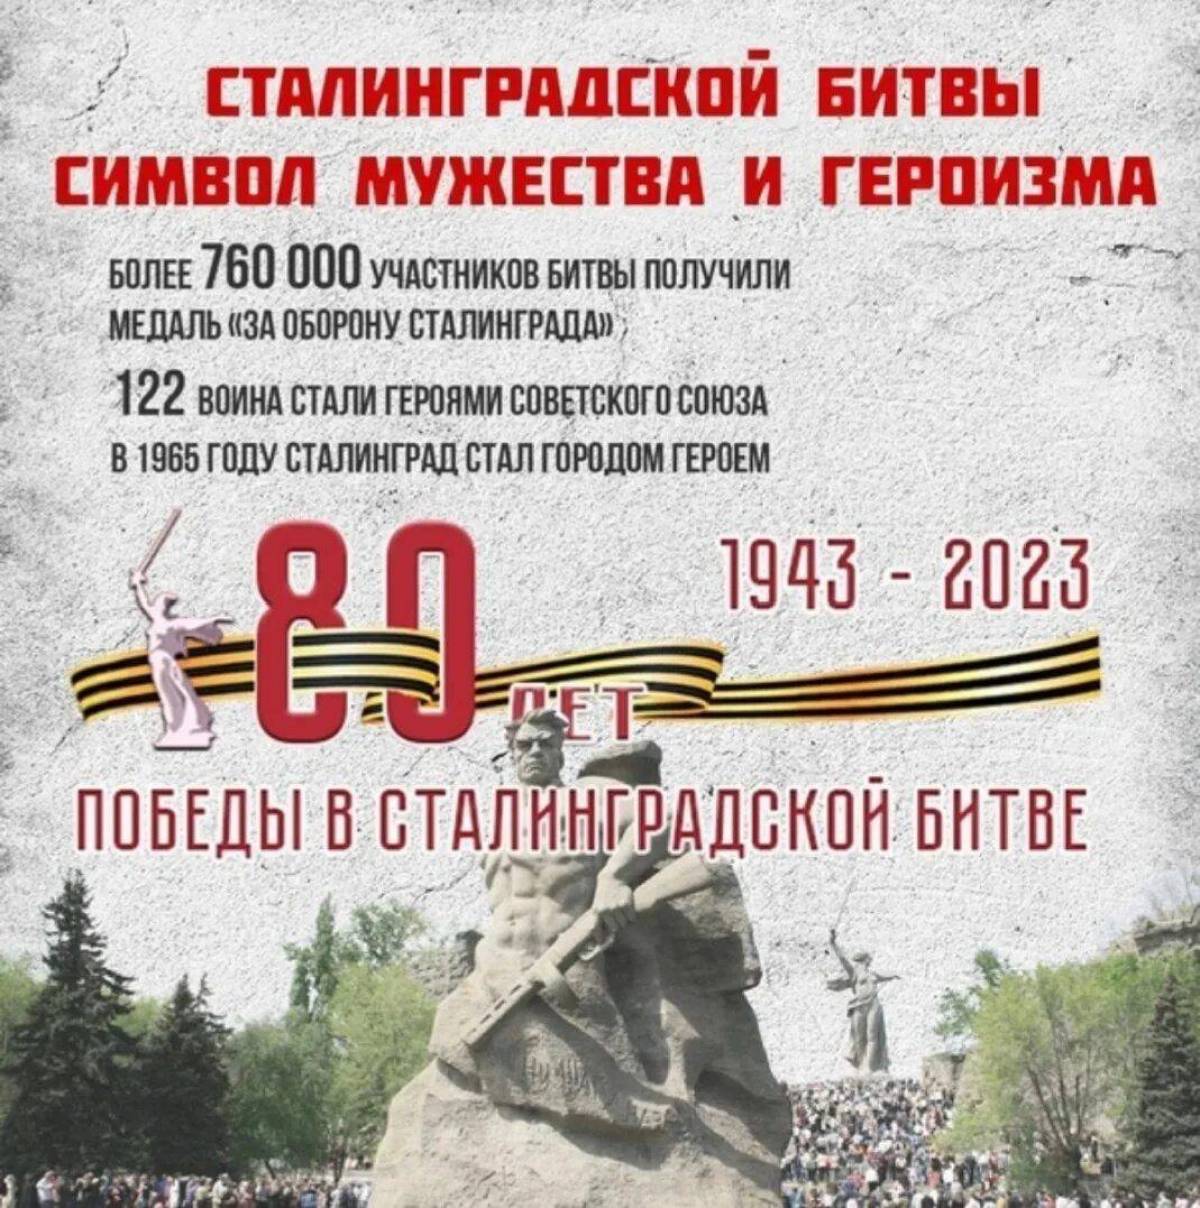 2 февраля сталинградская битва #15